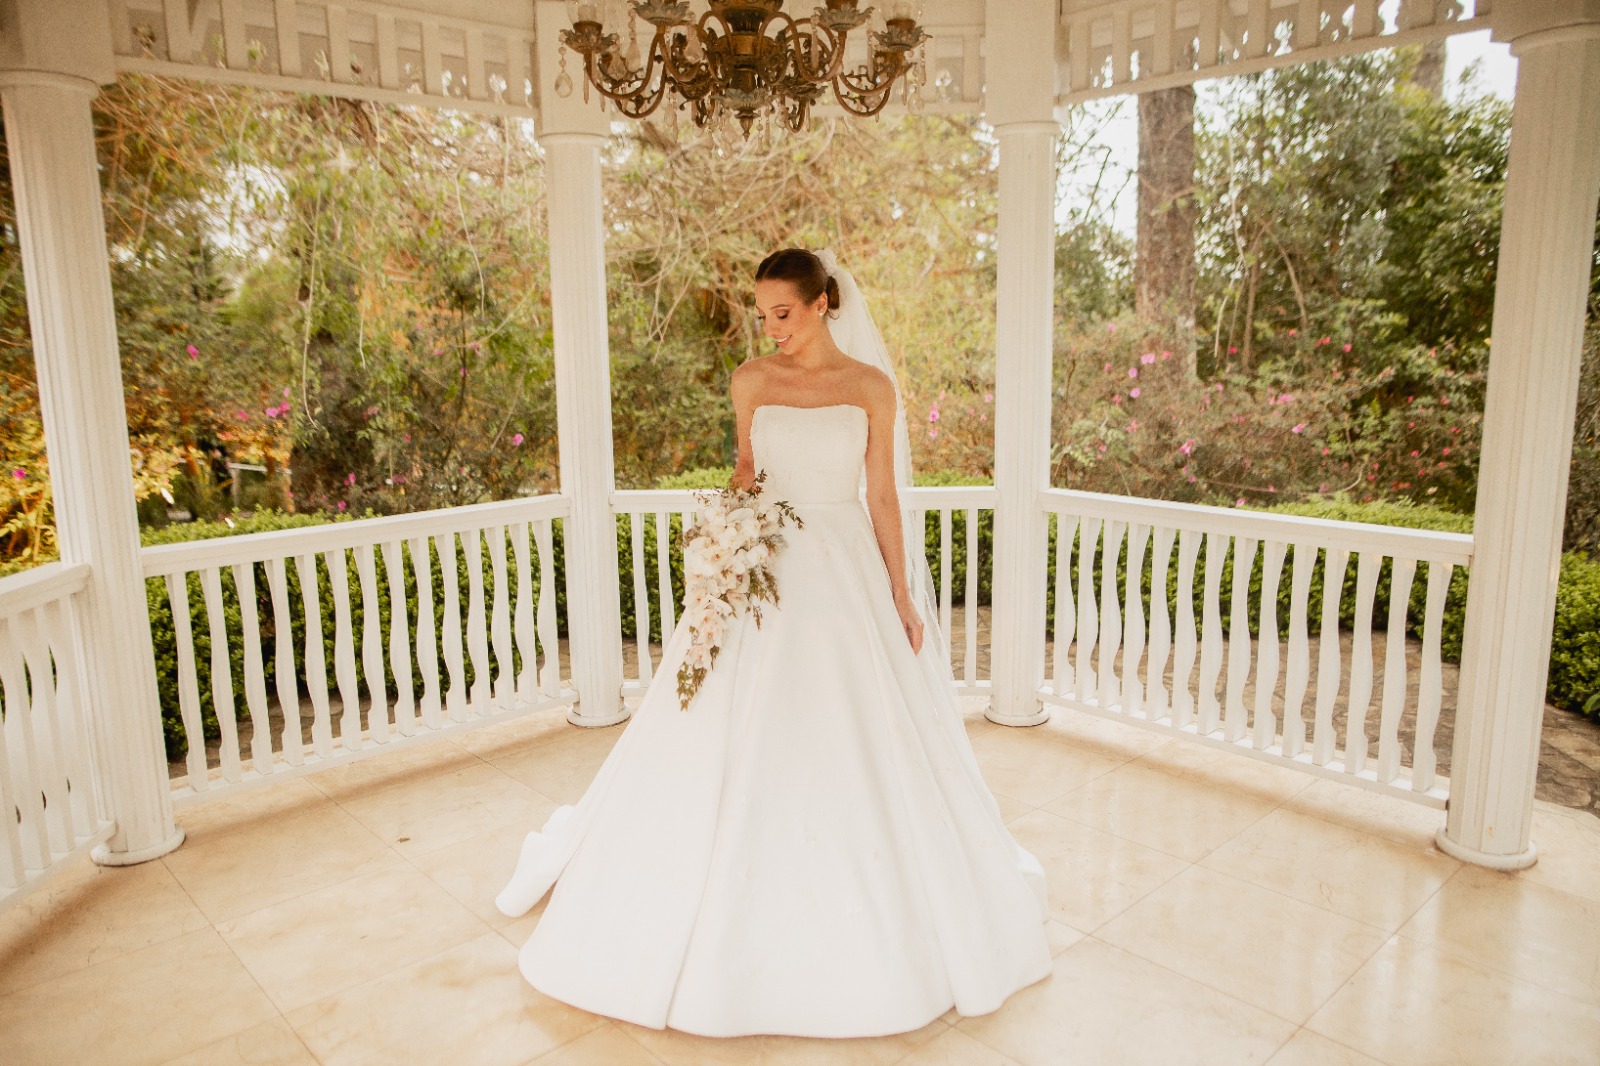 Vestido de noiva clássico estilo tomara que caia assinado por Luhana Pawlick | Foto Melqui Zago Fotografia e Pam Passos